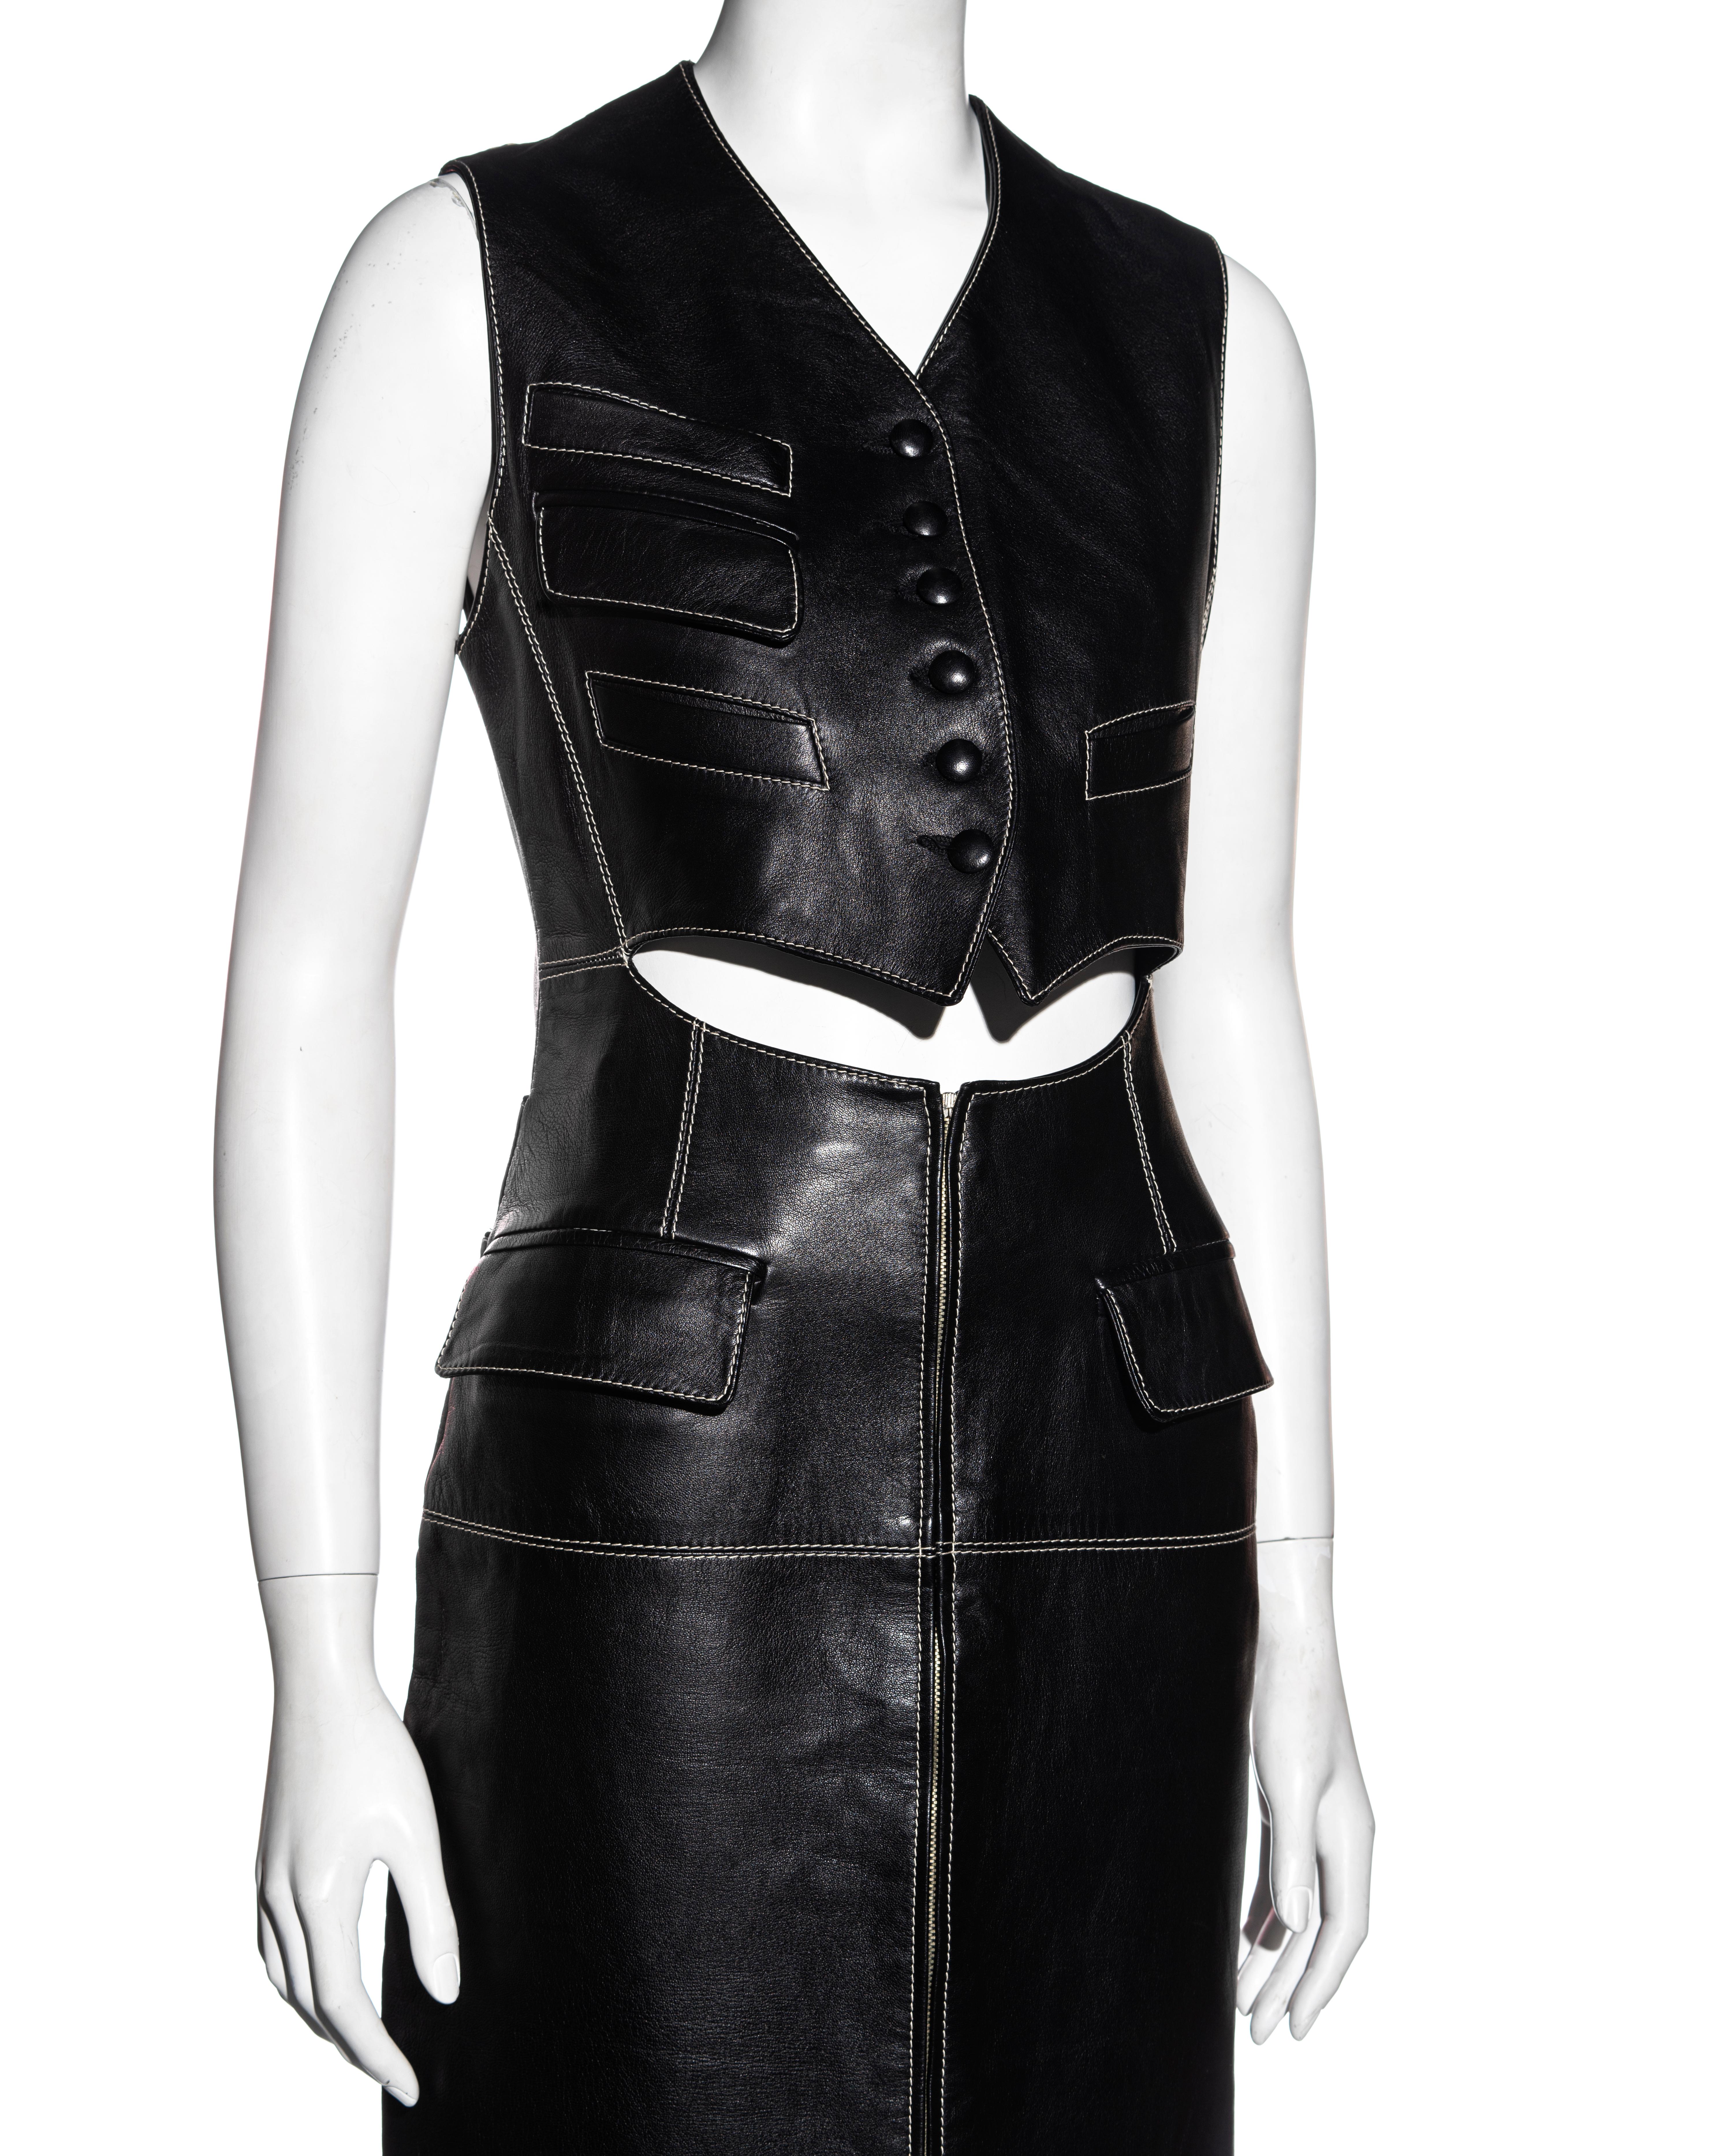 Jean Paul Gaultier black leather waistcoat dress, fw 1992 1